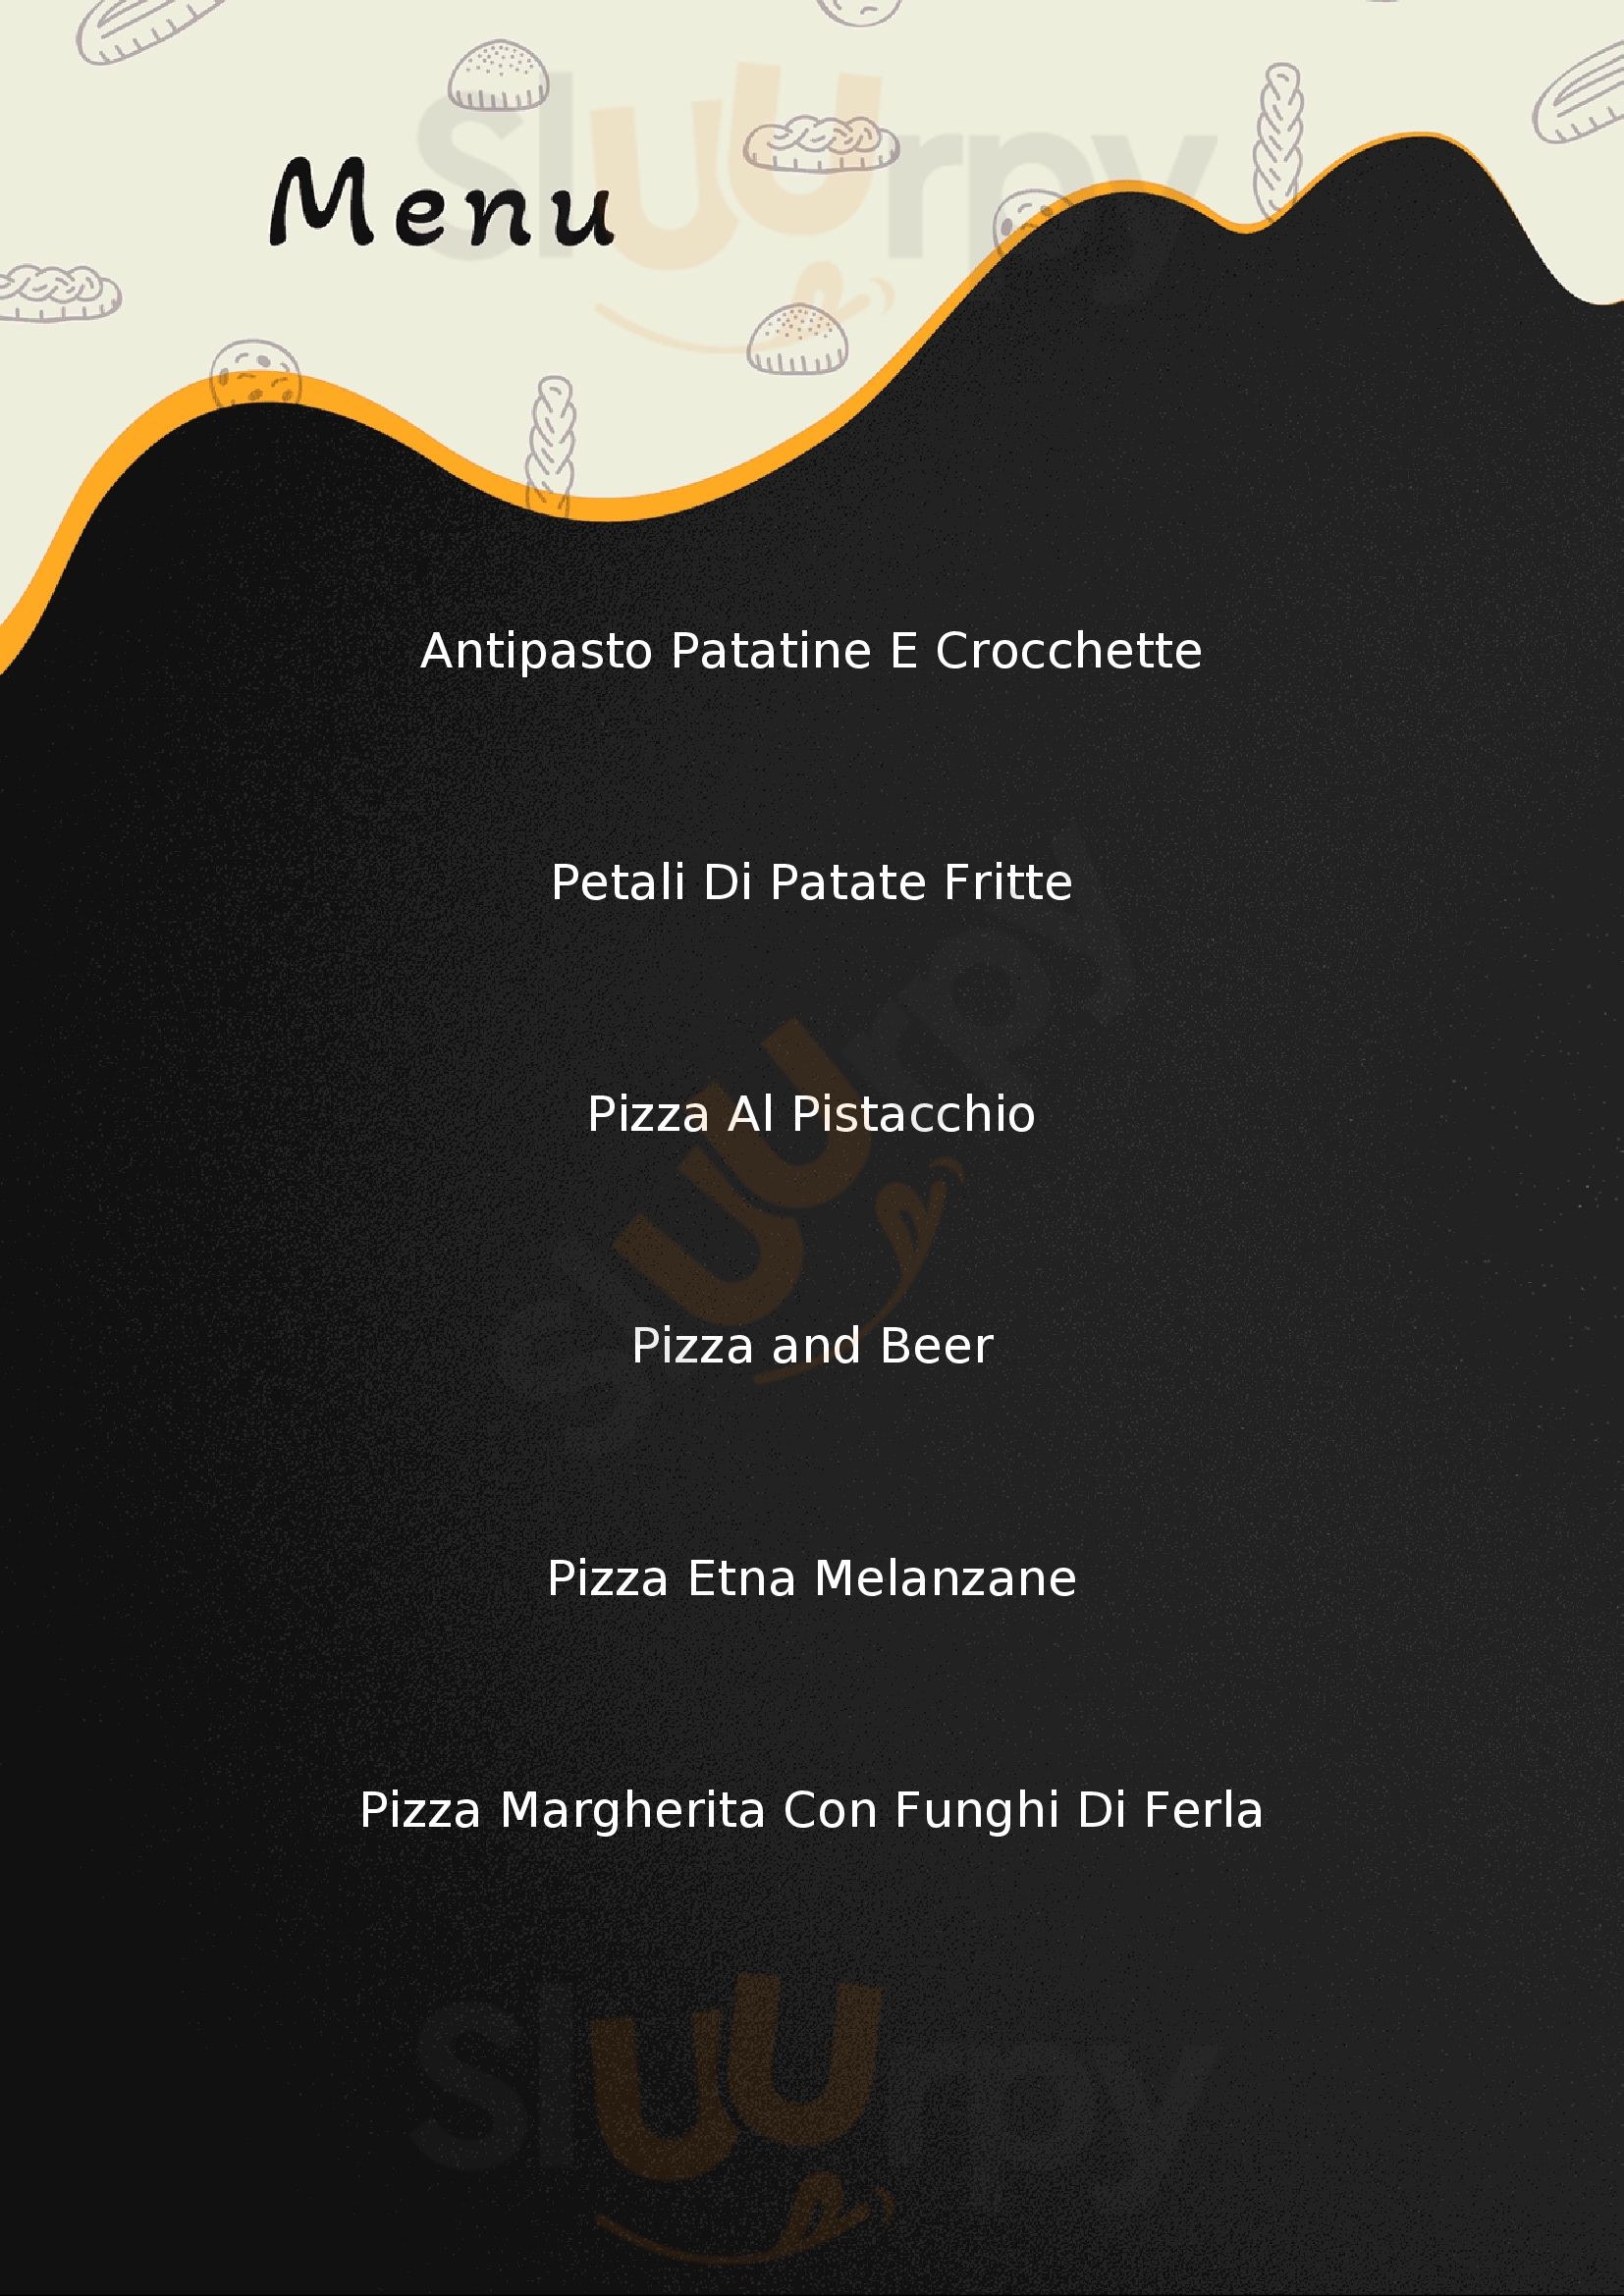 Royal Ristorante Pizzeria Randazzo menù 1 pagina